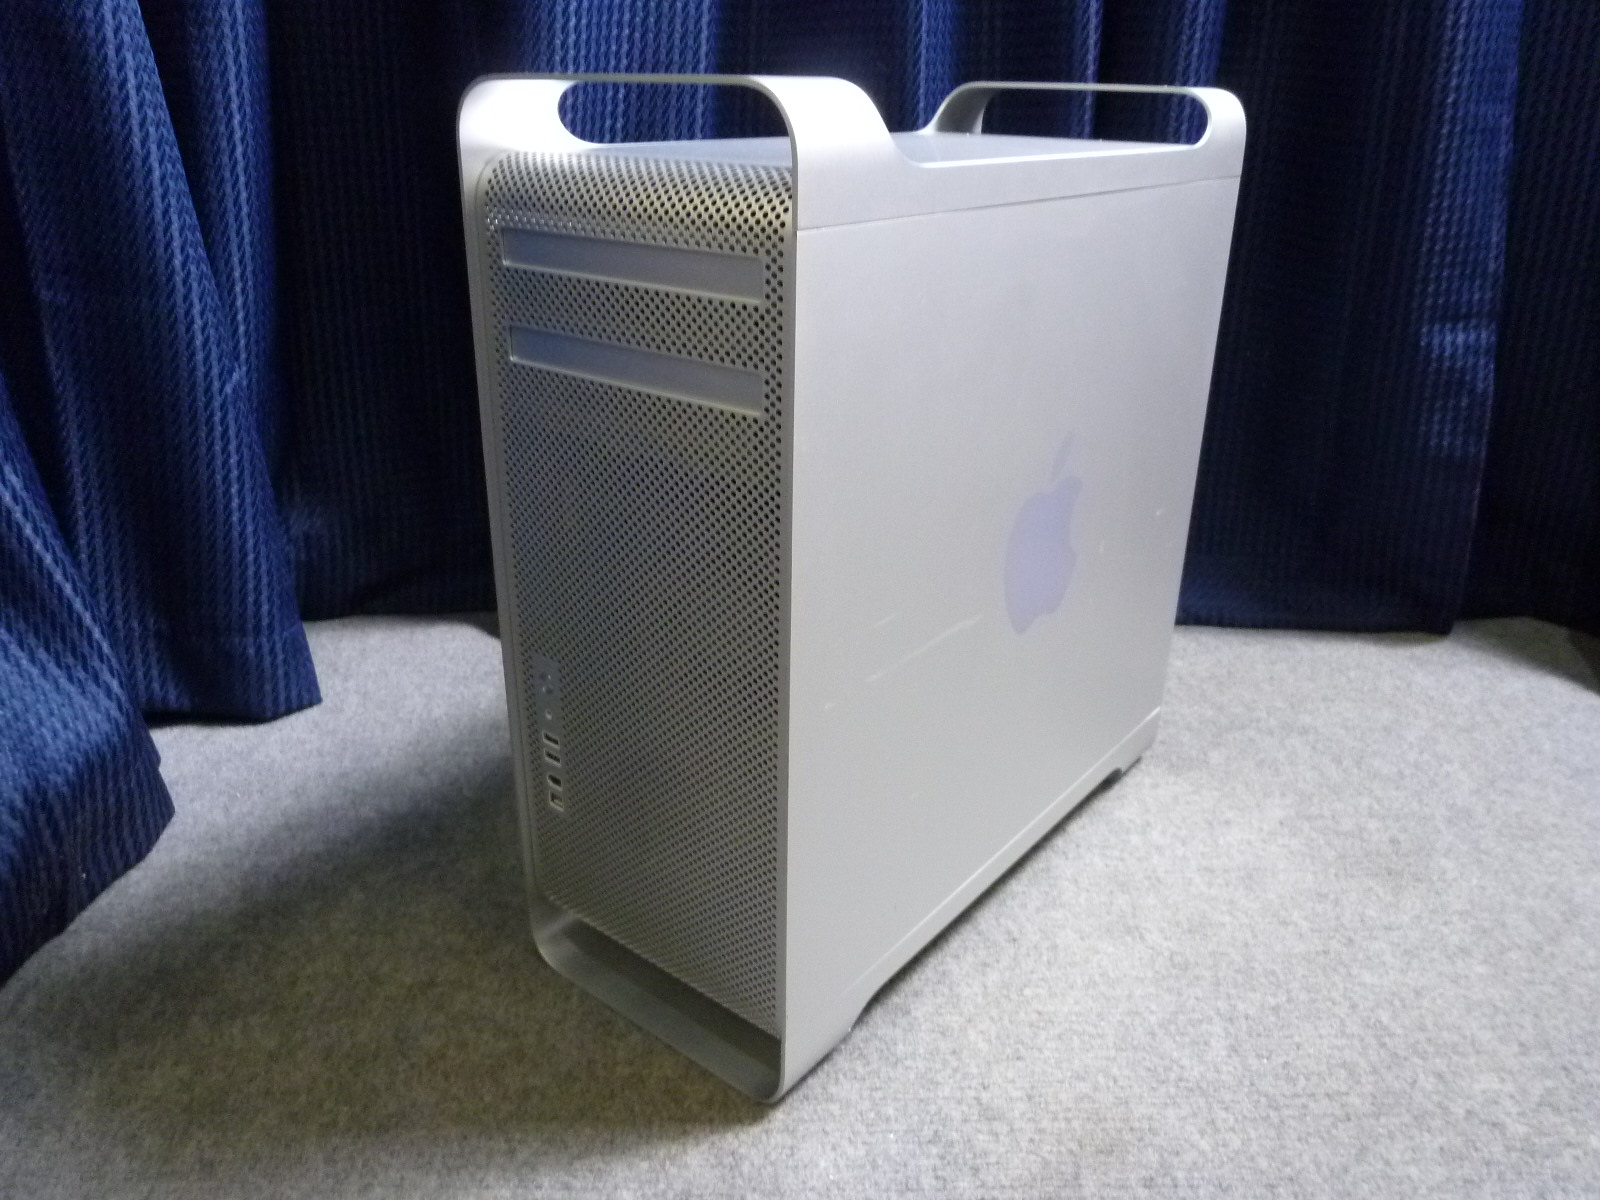 大阪府藤井寺市にてApple Mac Pro3.2 アップル マックプロA1186を買取させていただきました